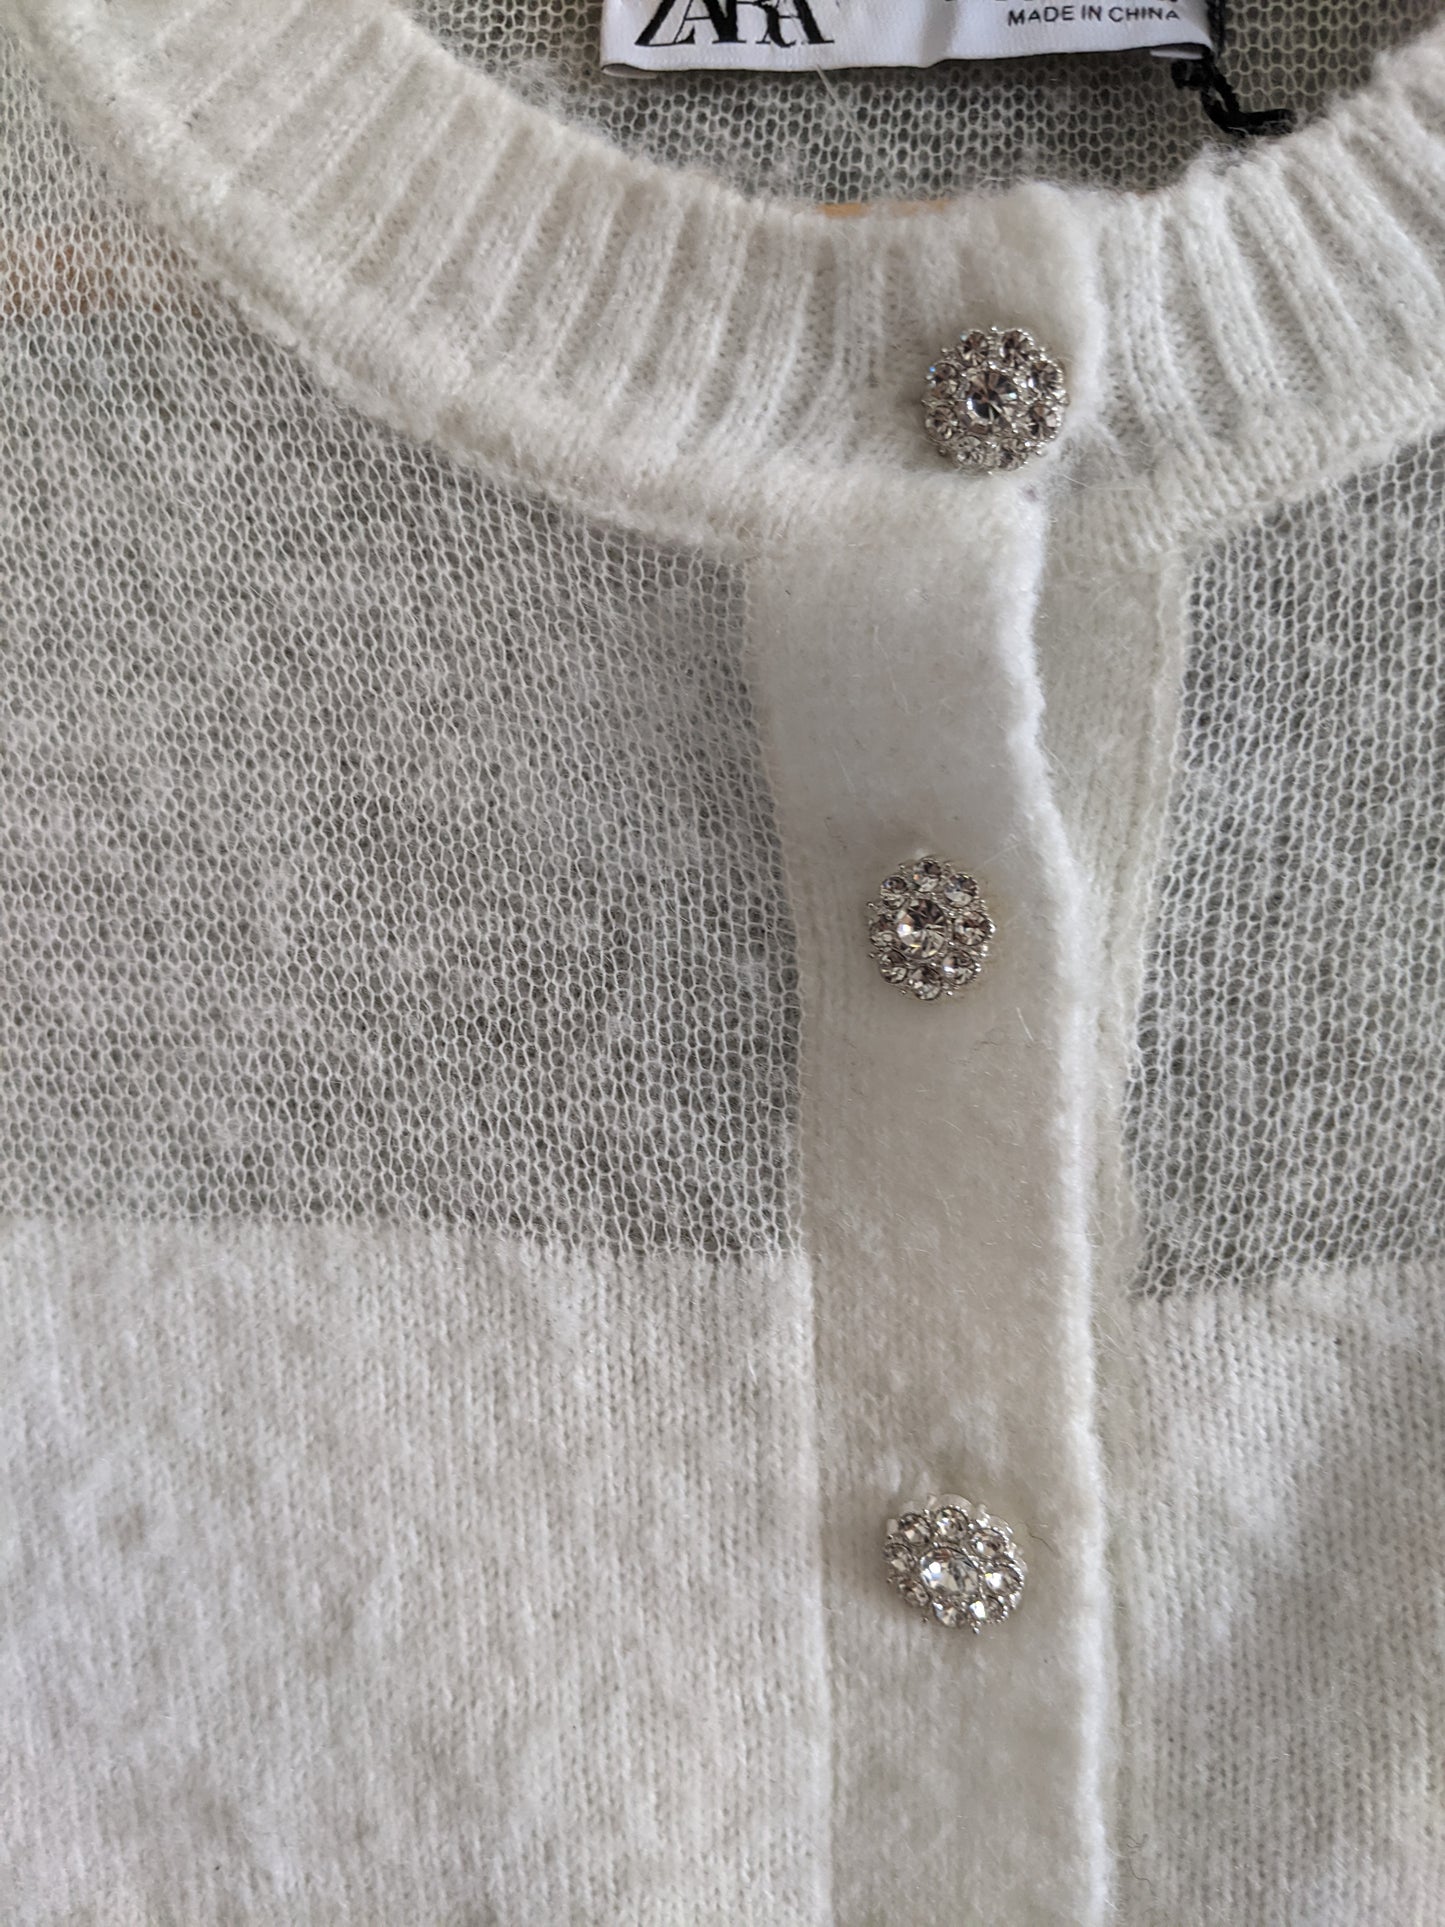 NWOT! Zara fuzzy sweater with jewel buttons sz Lrg